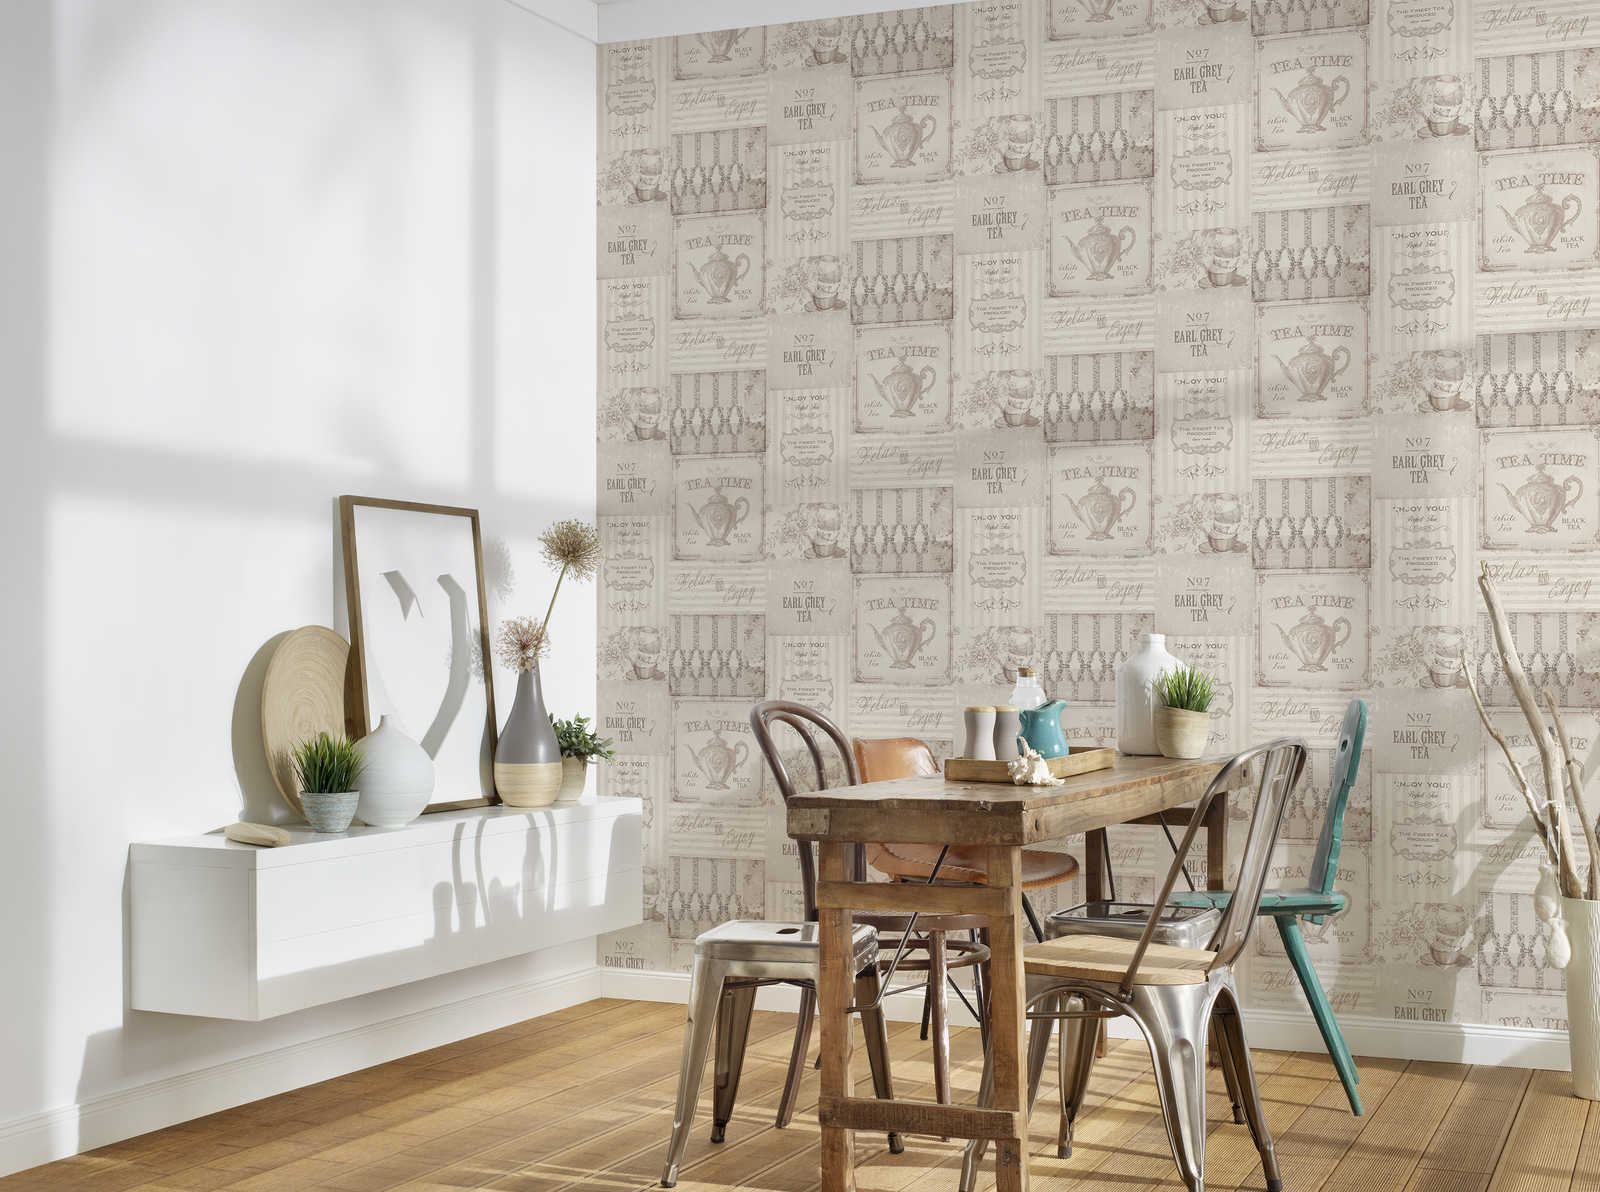             Mustertapete Tea Time Collage im Landhaus Stil – Grau
        